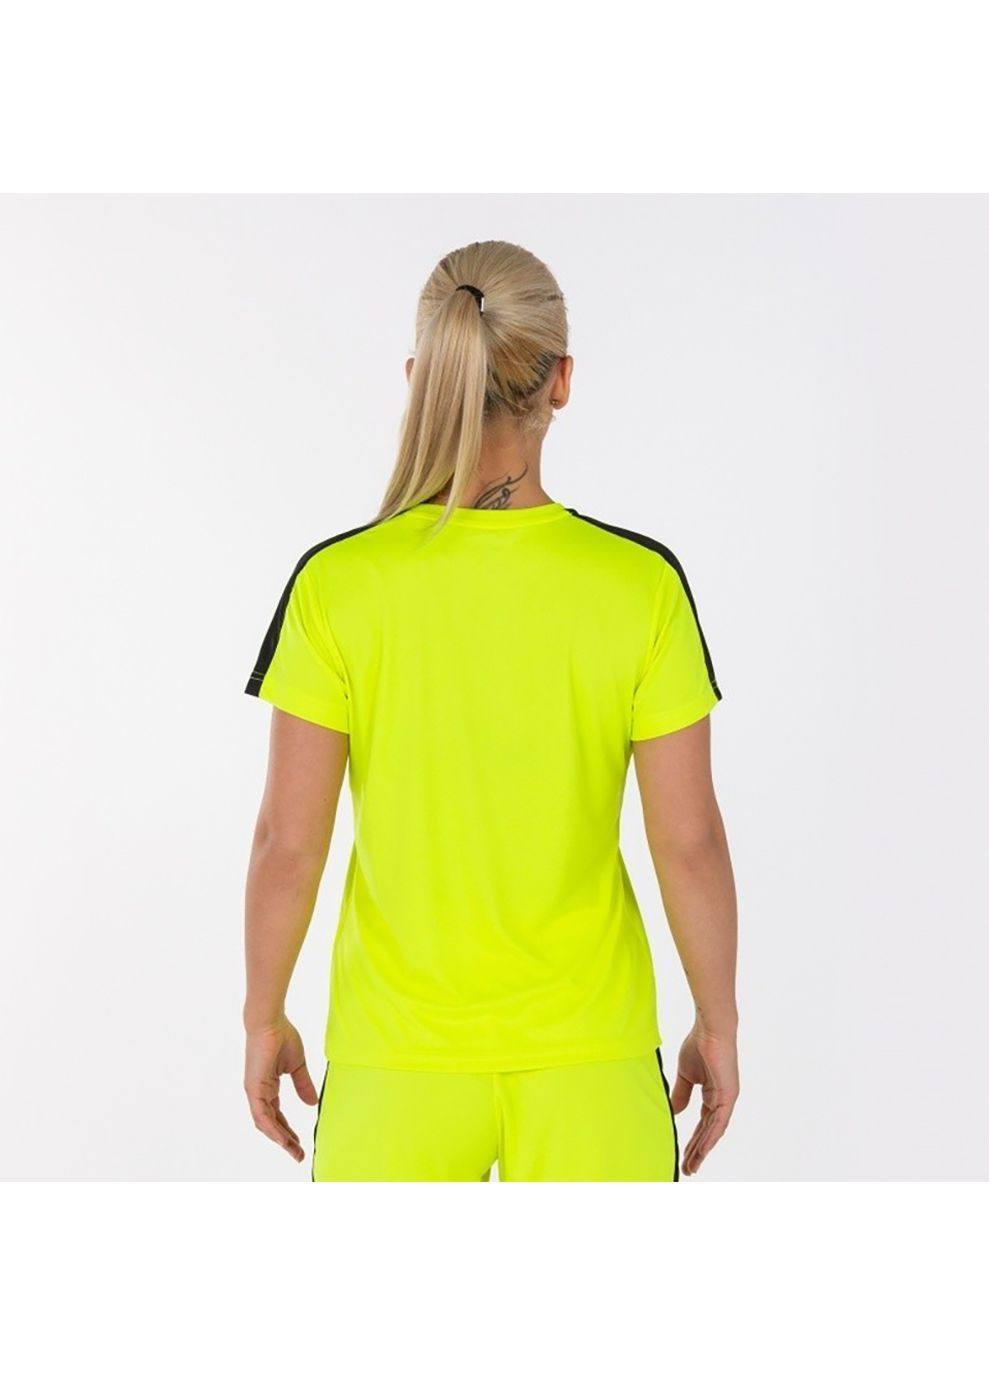 Желтая демисезон футболка женская academy т.жёлтый Joma